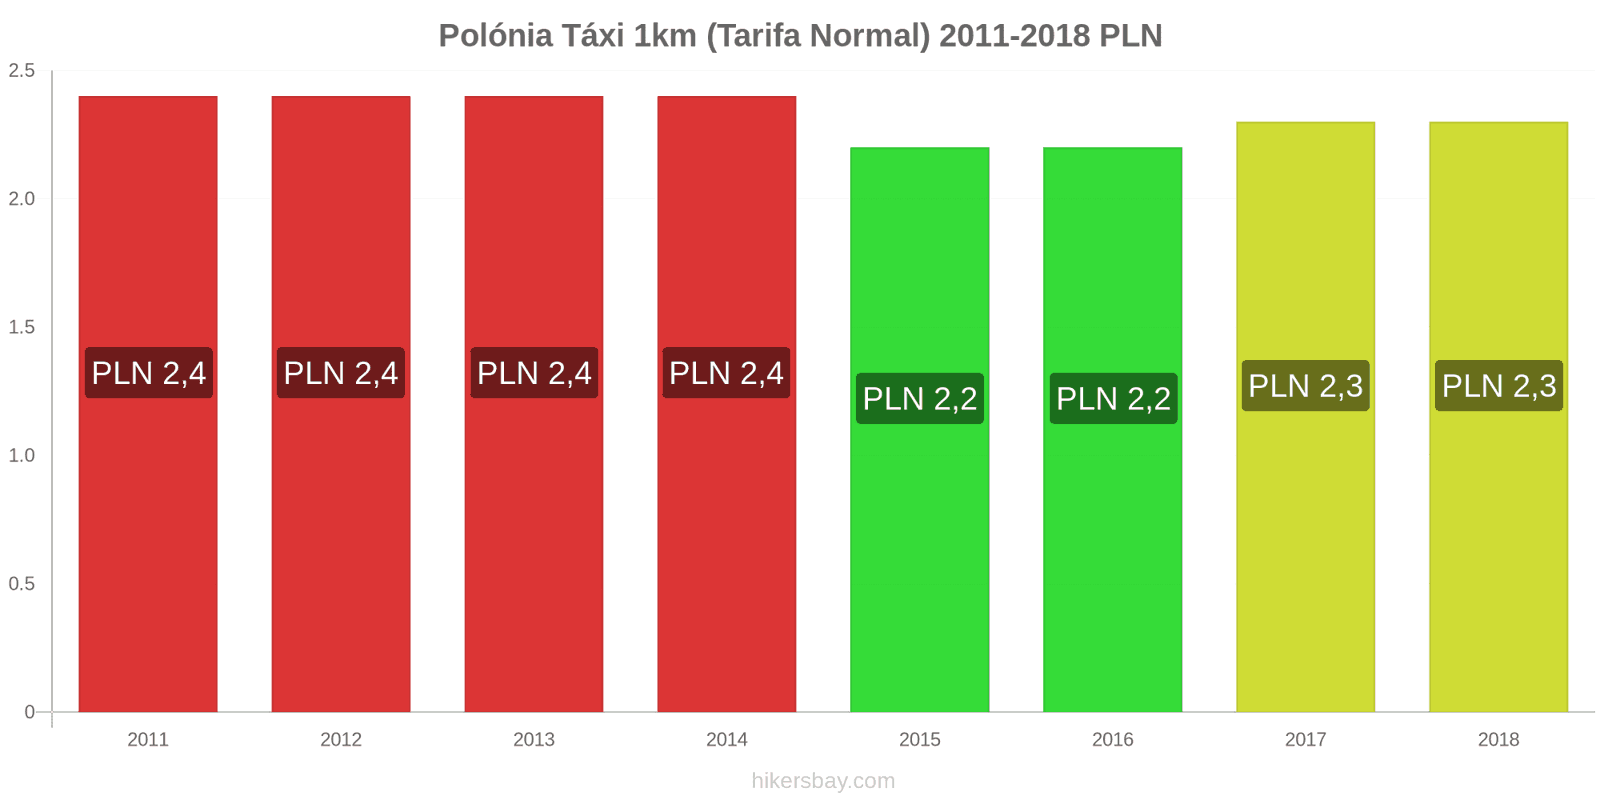 Polónia mudanças de preços Táxi 1km (Tarifa Normal) hikersbay.com